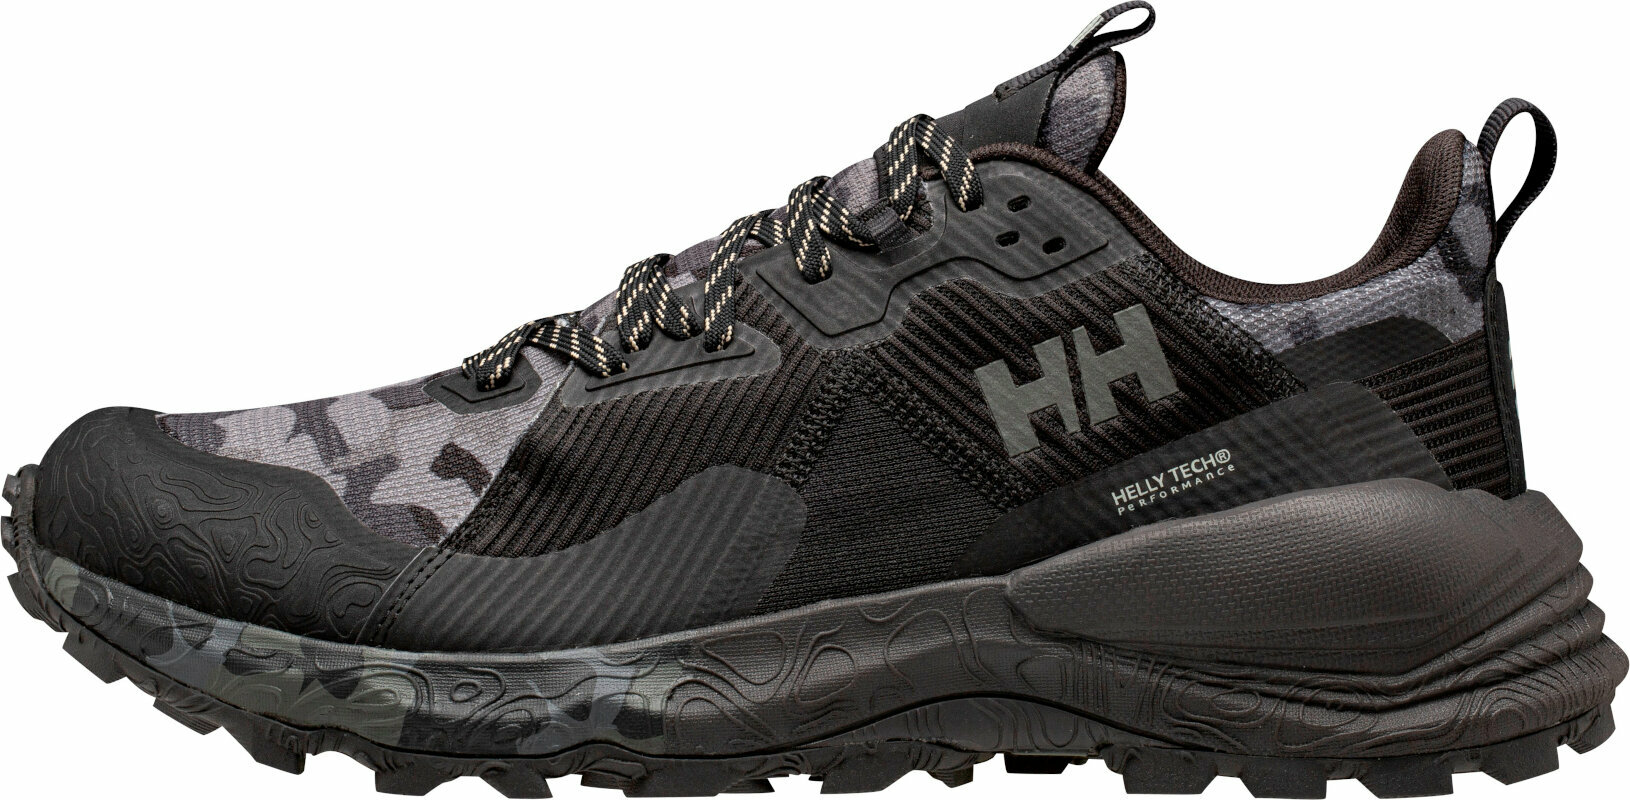 Спорт > Бягане > Маратонки > Мъжки маратонки > Трейл обувки Helly Hansen Men’s Hawk Stapro Trail Running High Top Shoes  Black/Phantom Ebony 42,5